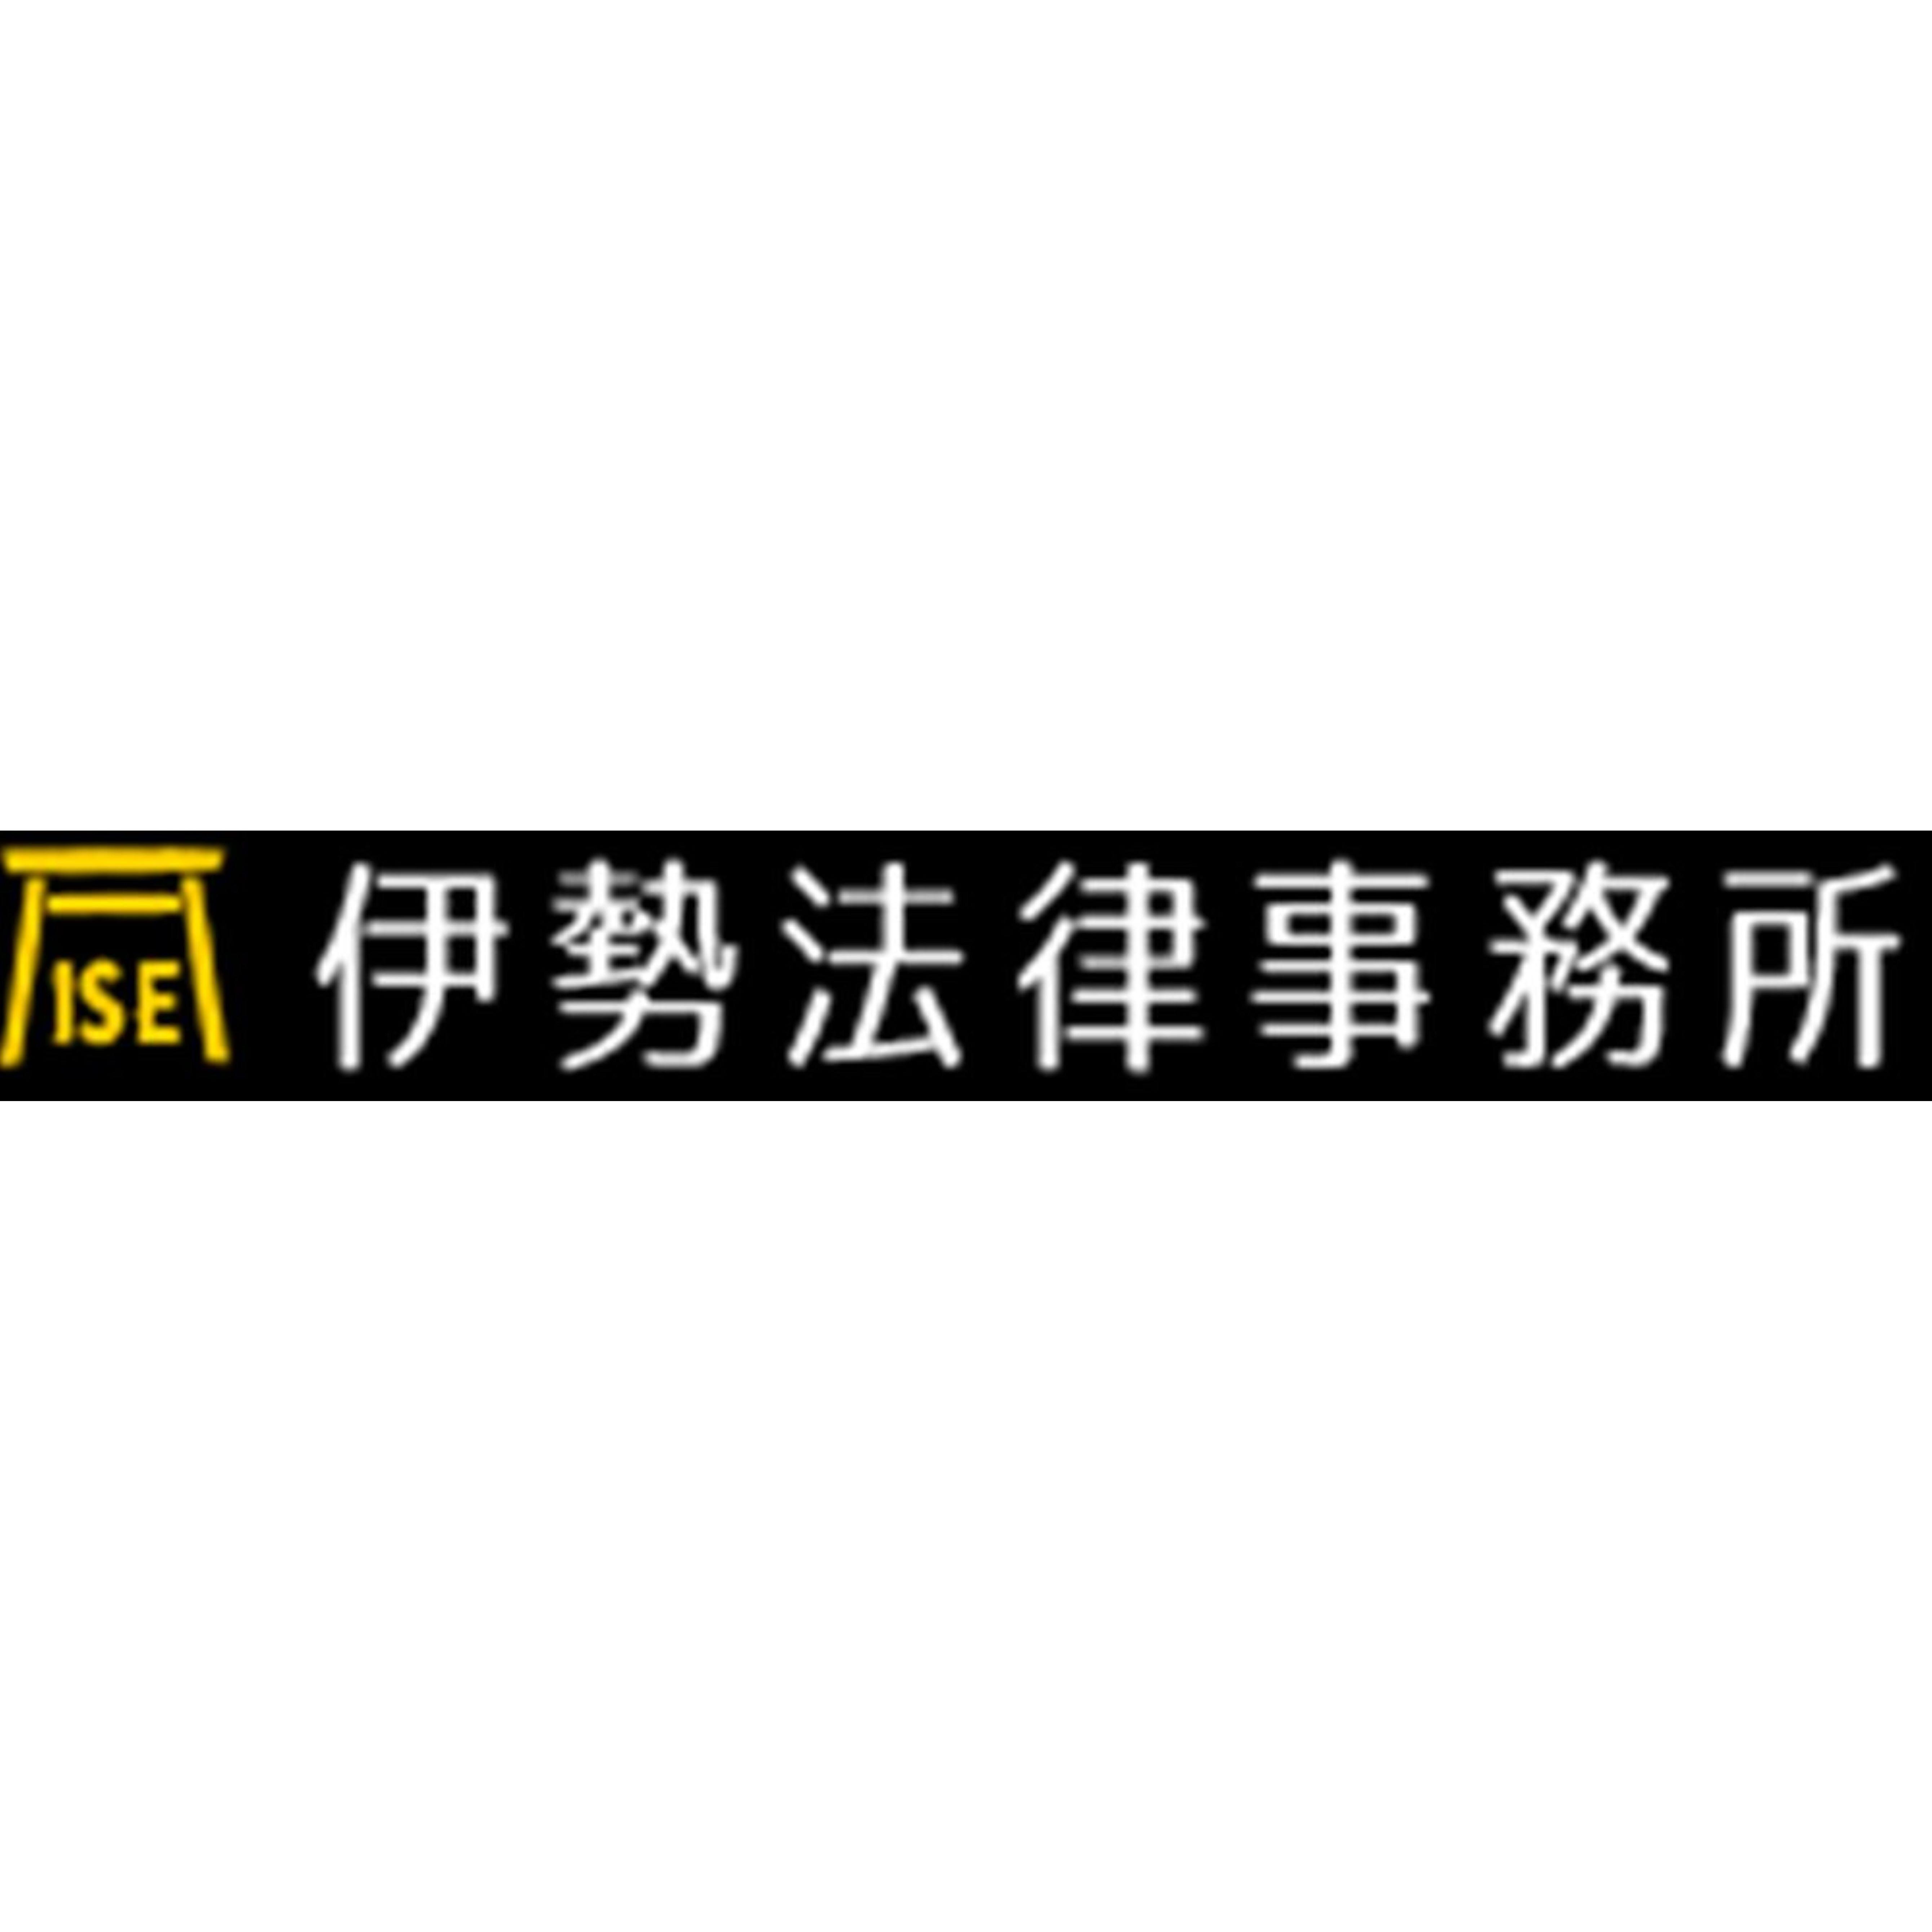 伊勢法律事務所 Logo